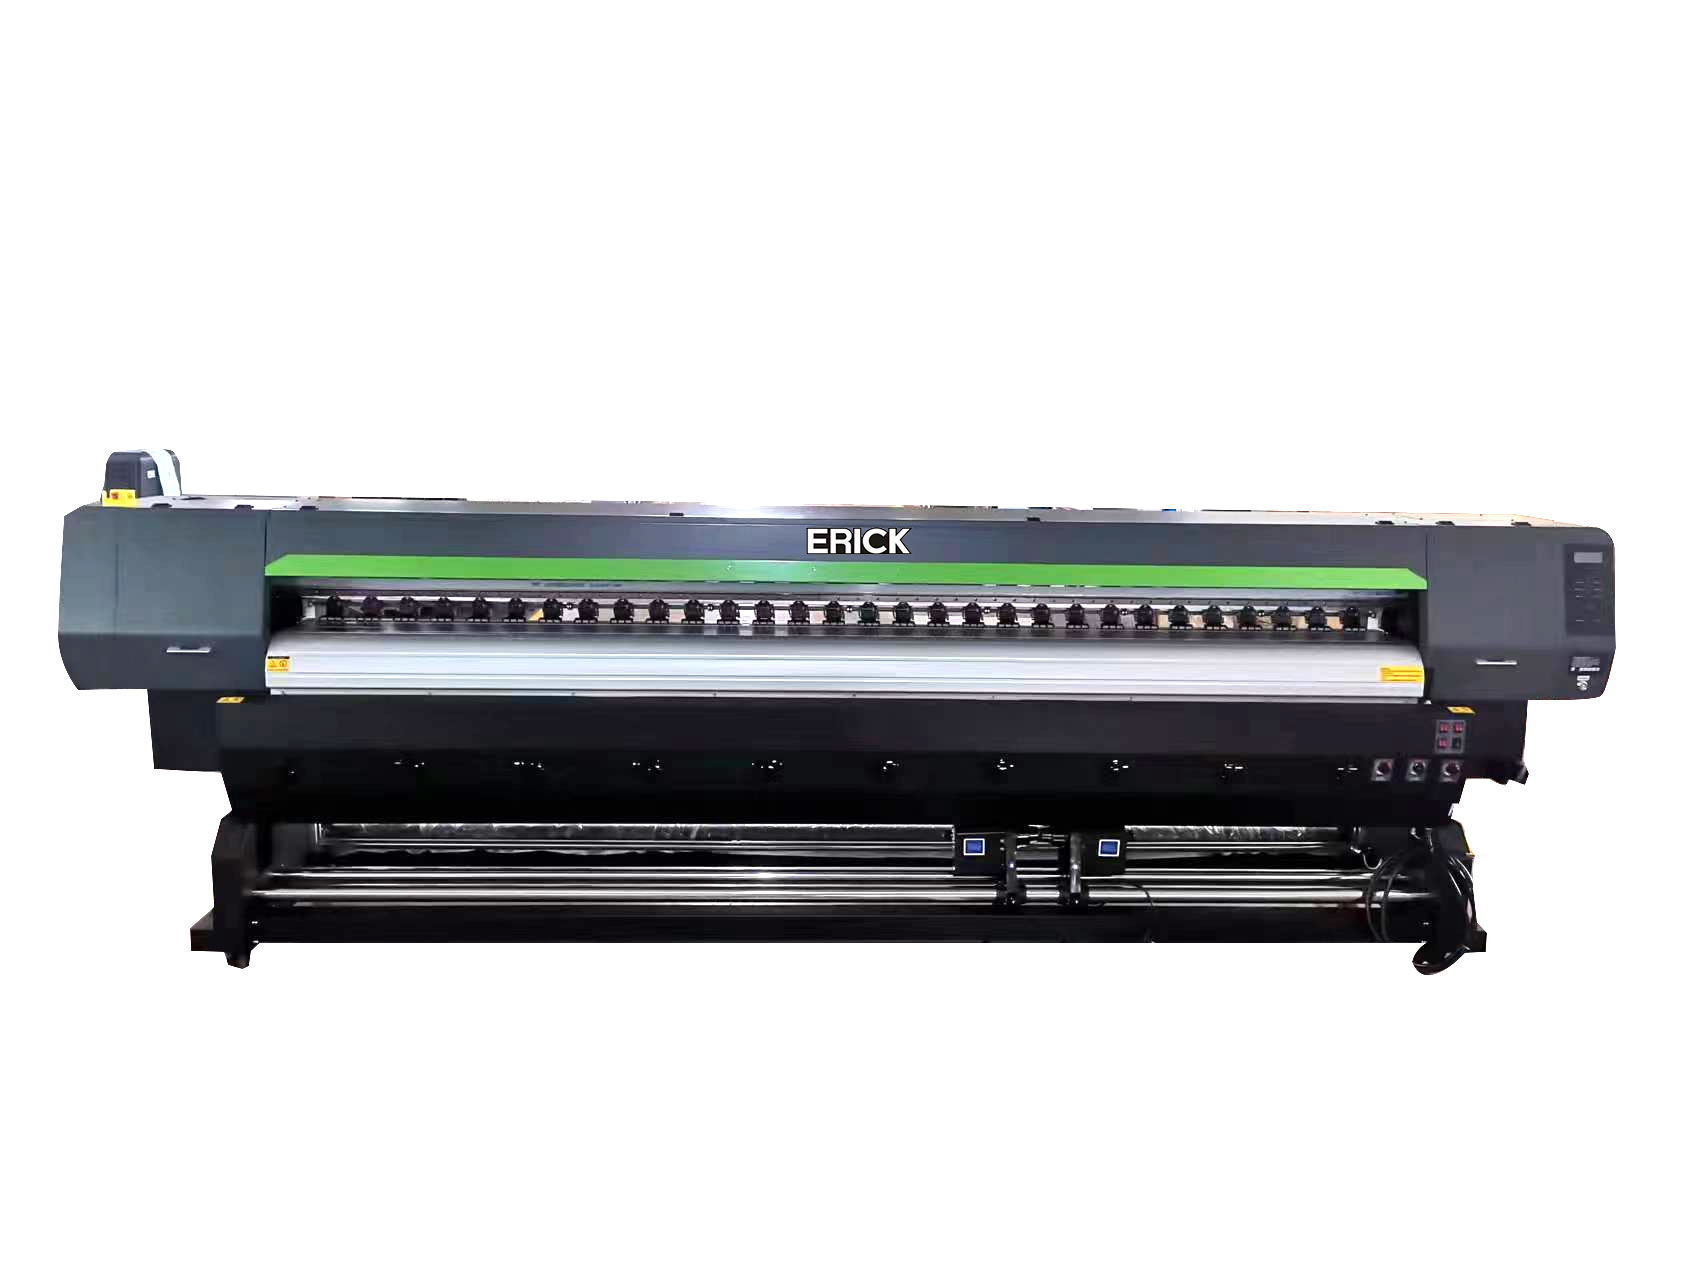 រោងចក្រ 3.2 ម៉ែត្រ EP-I3200 E1 * 2pc ទ្រង់ទ្រាយធំ eco solvent plotter printer digital printer